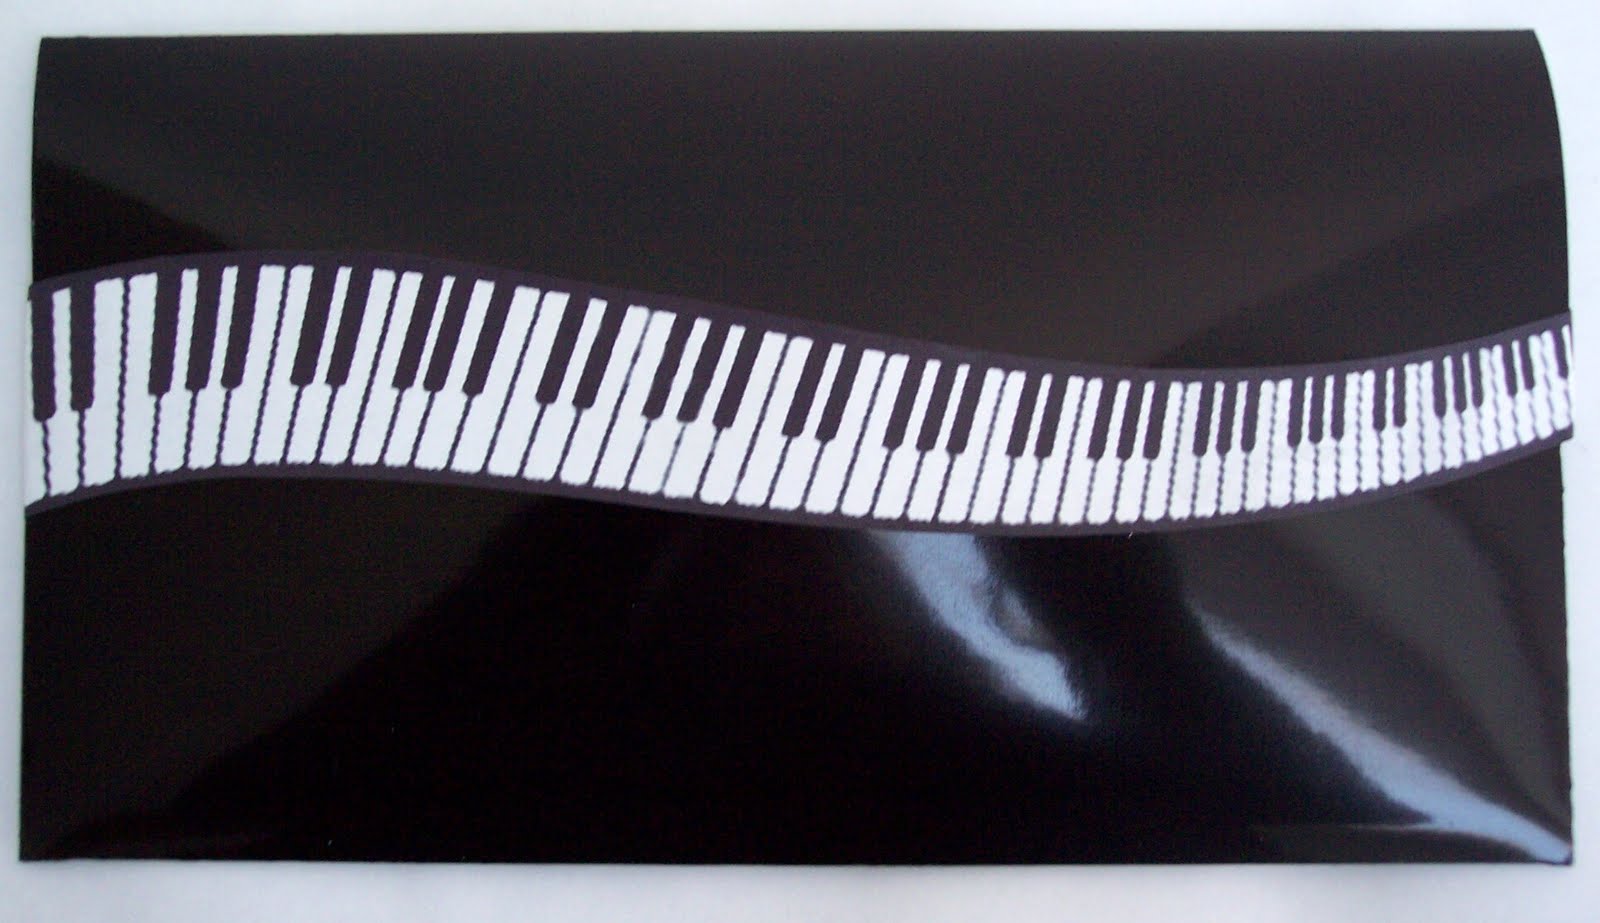 Piano Keys Wallpaper Border Piano keys musical notes